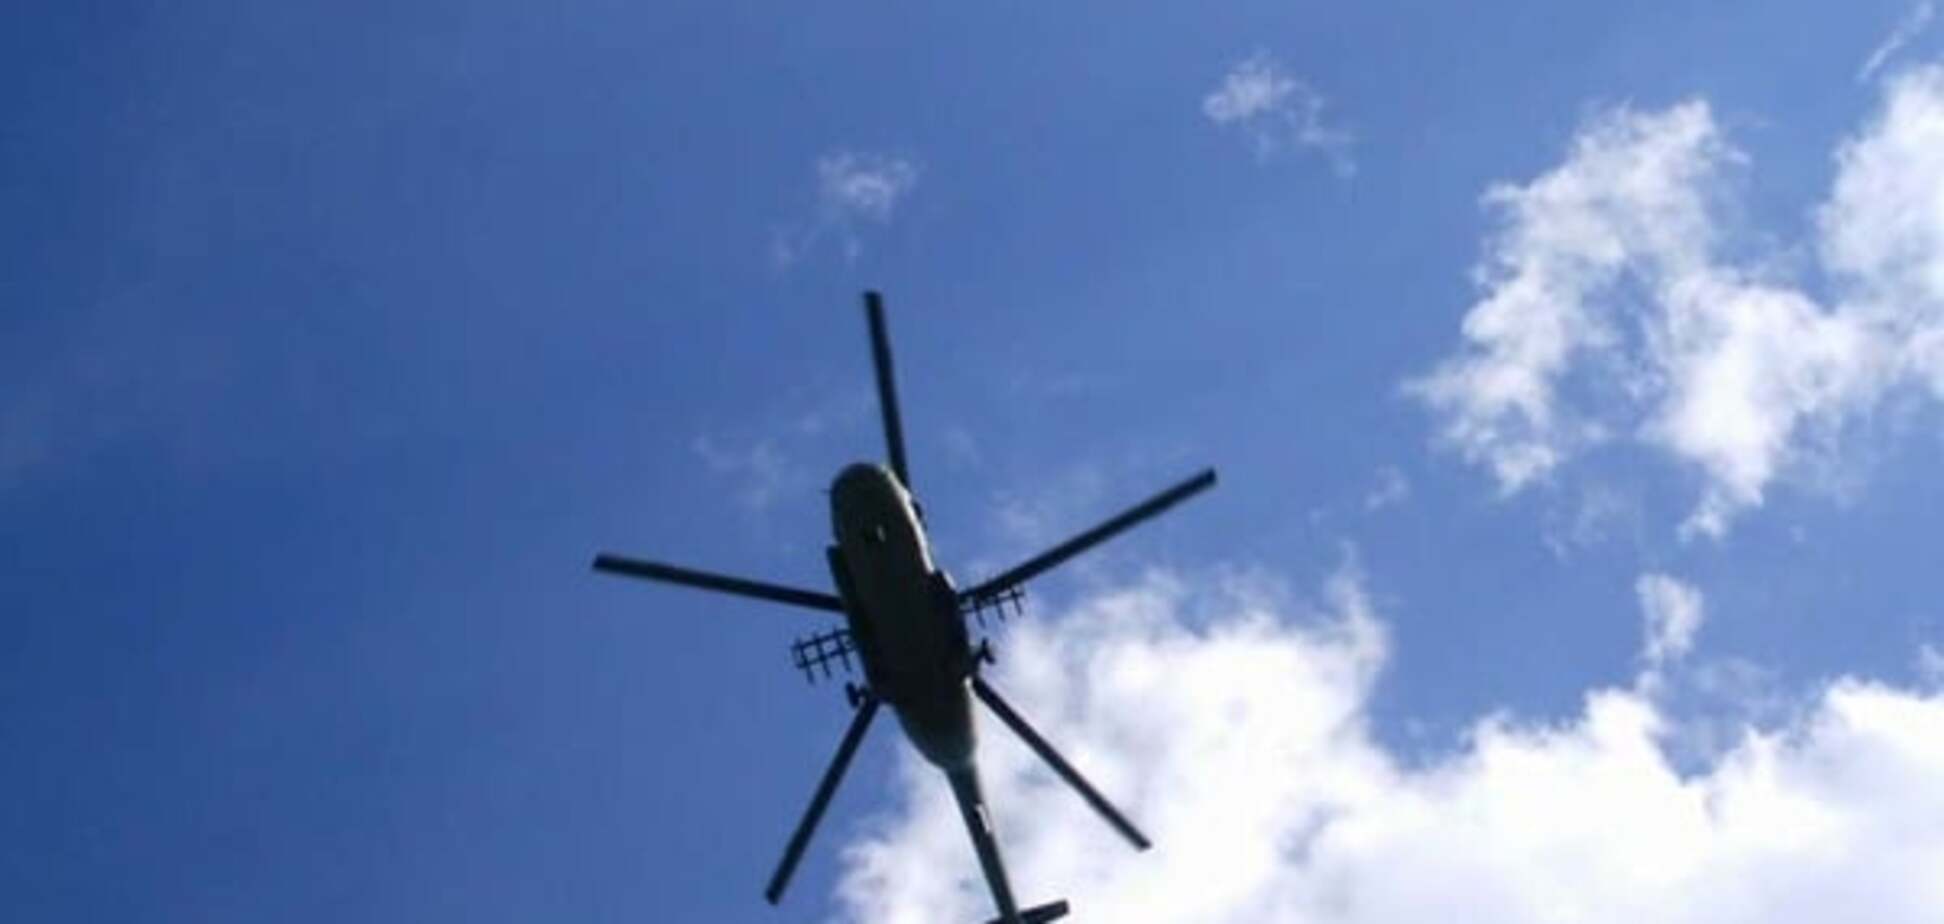 По-братски: военный вертолет РФ нарушил воздушное пространство Грузии